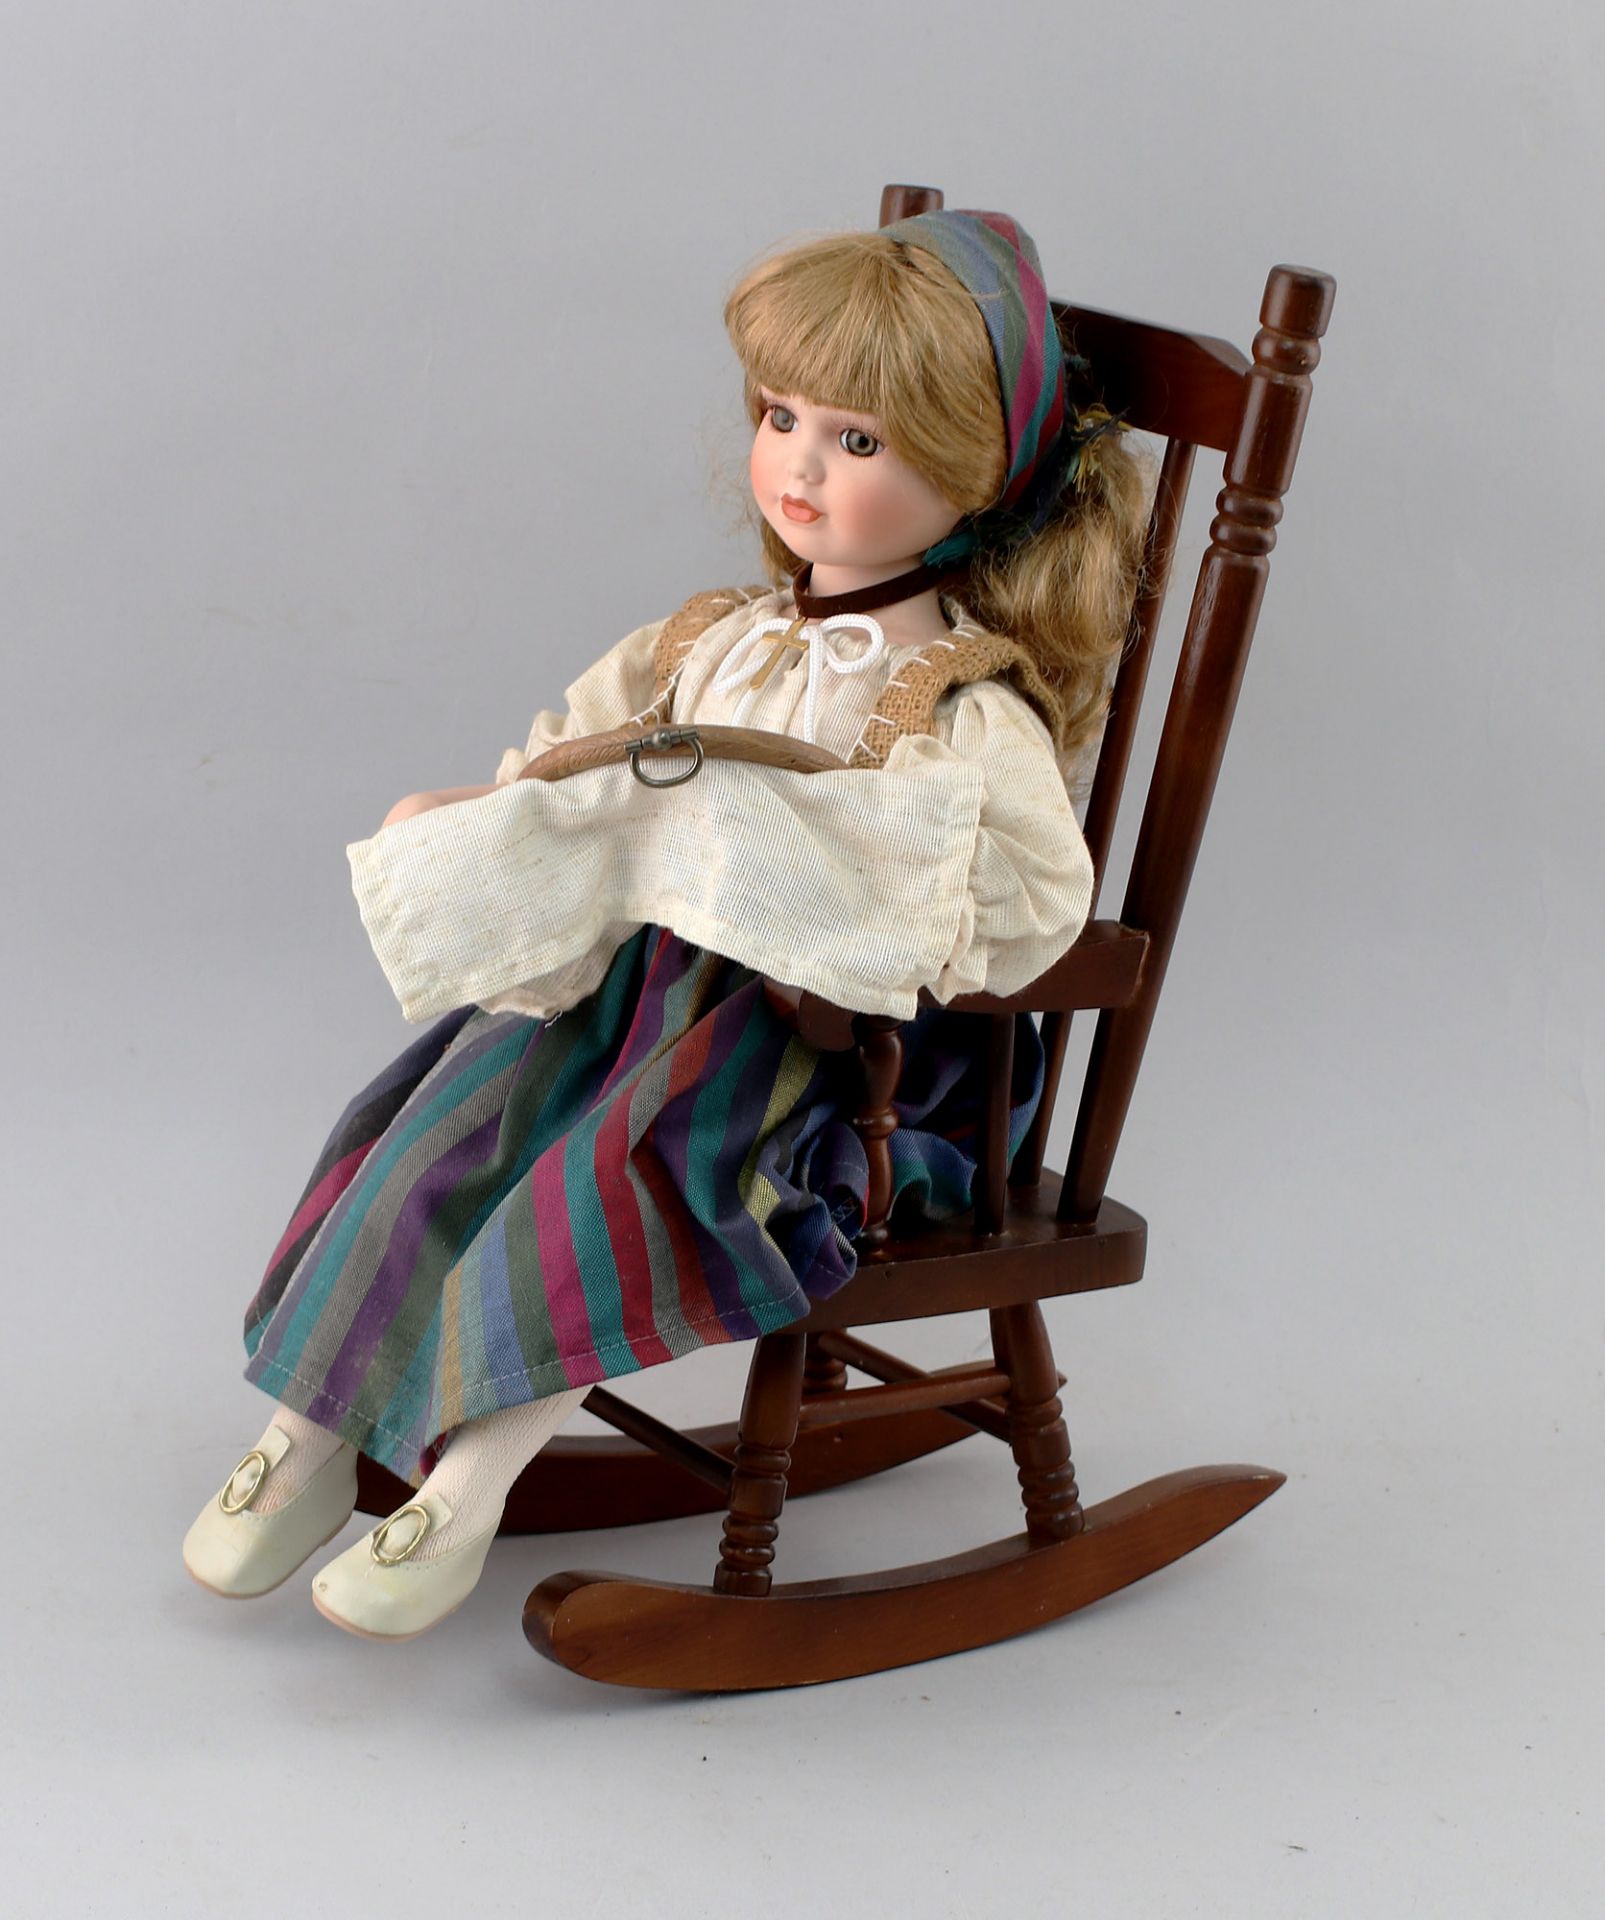 Puppe im Stuhl beim Sticken - Bild 2 aus 4